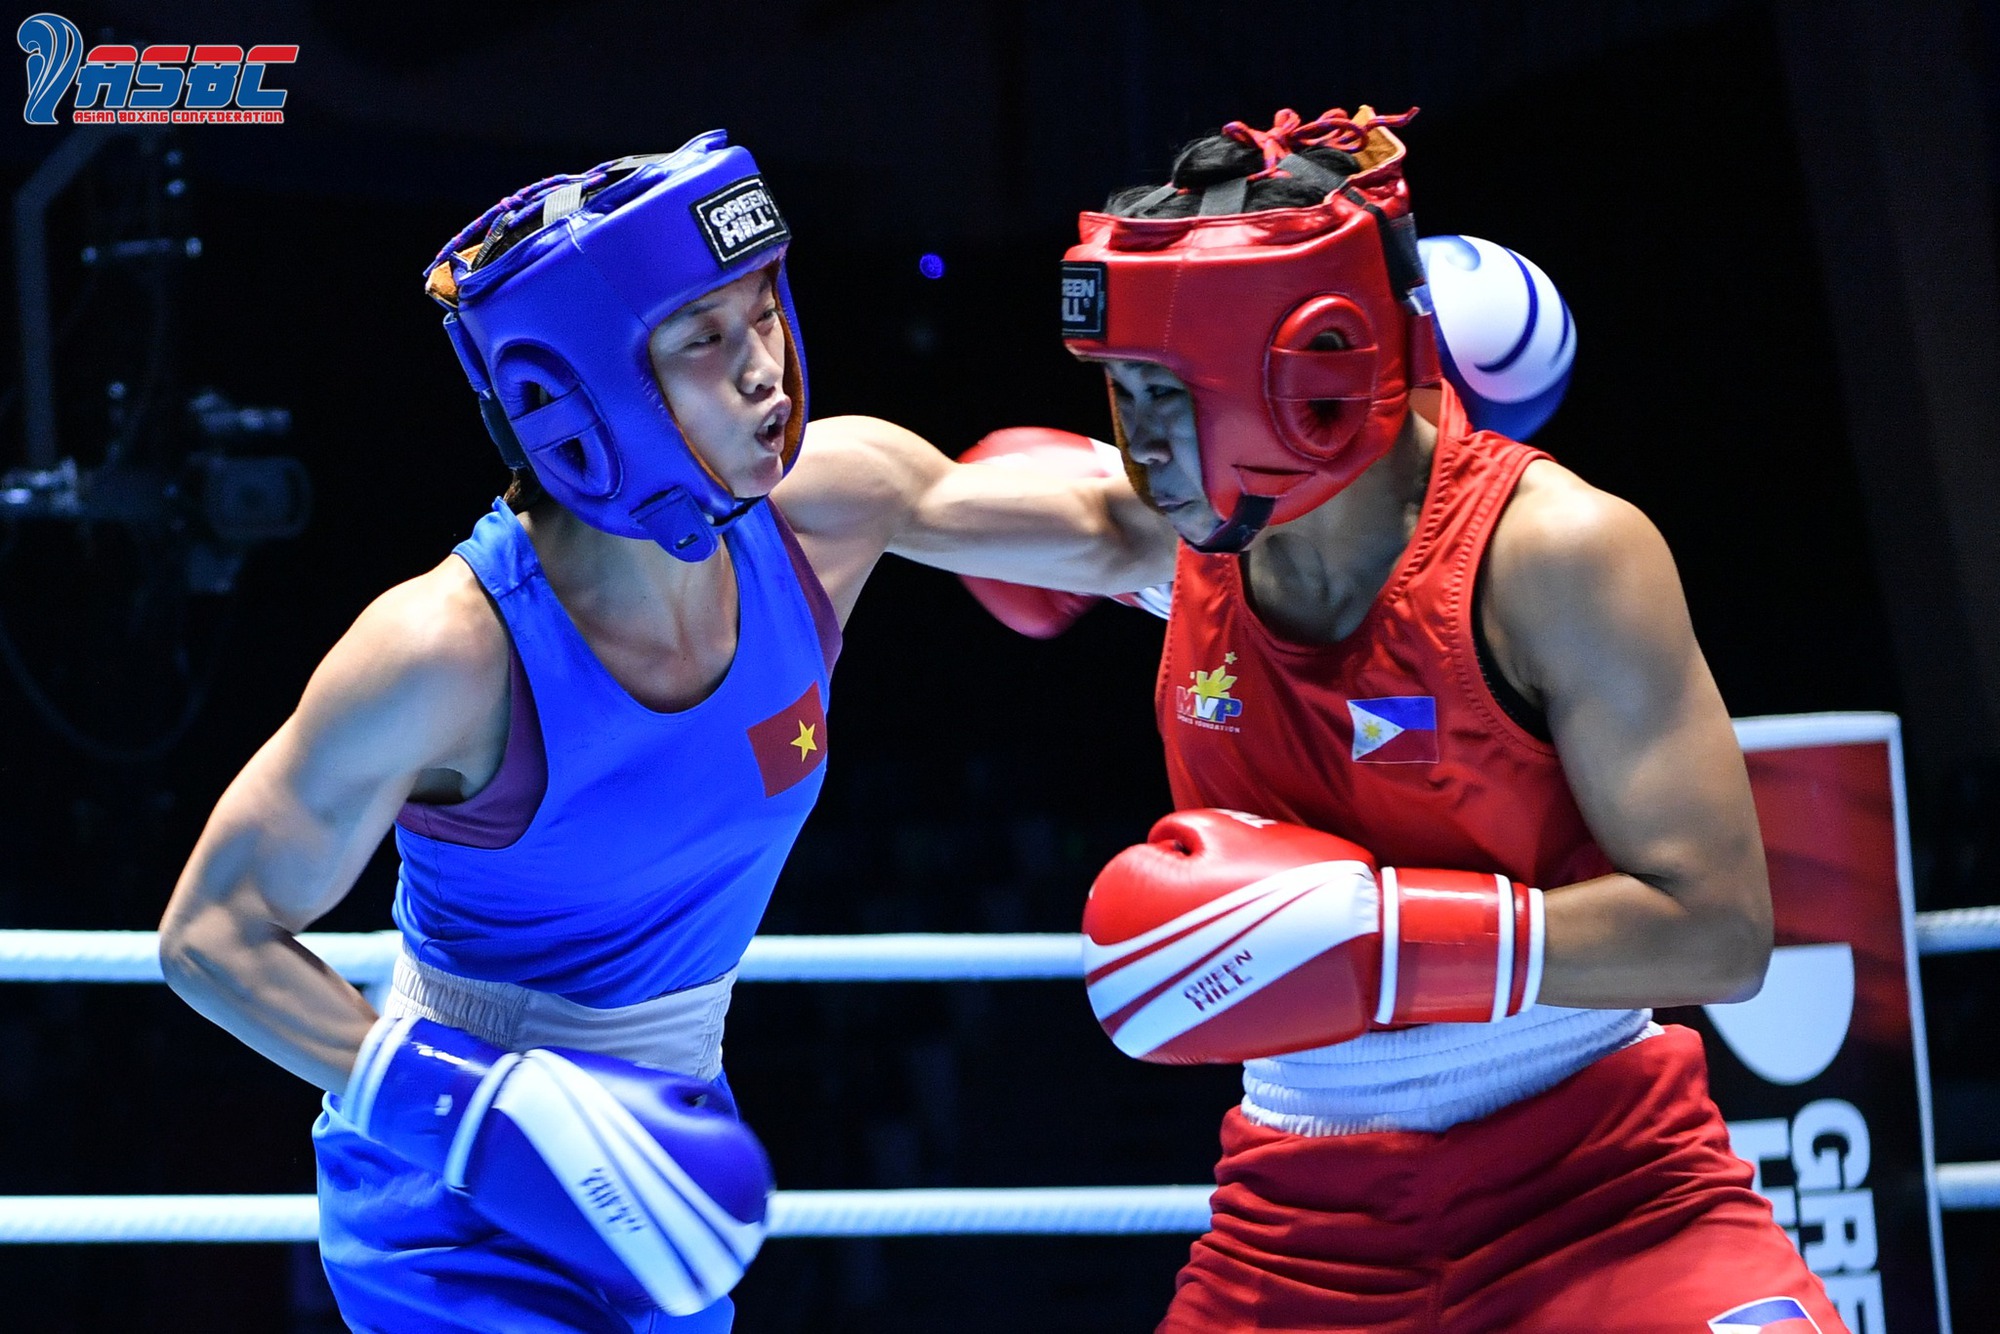 Nguyễn Thị Tâm thắng thuyết phục, lọt vào chung kết giải vô địch boxing châu Á - Ảnh 1.